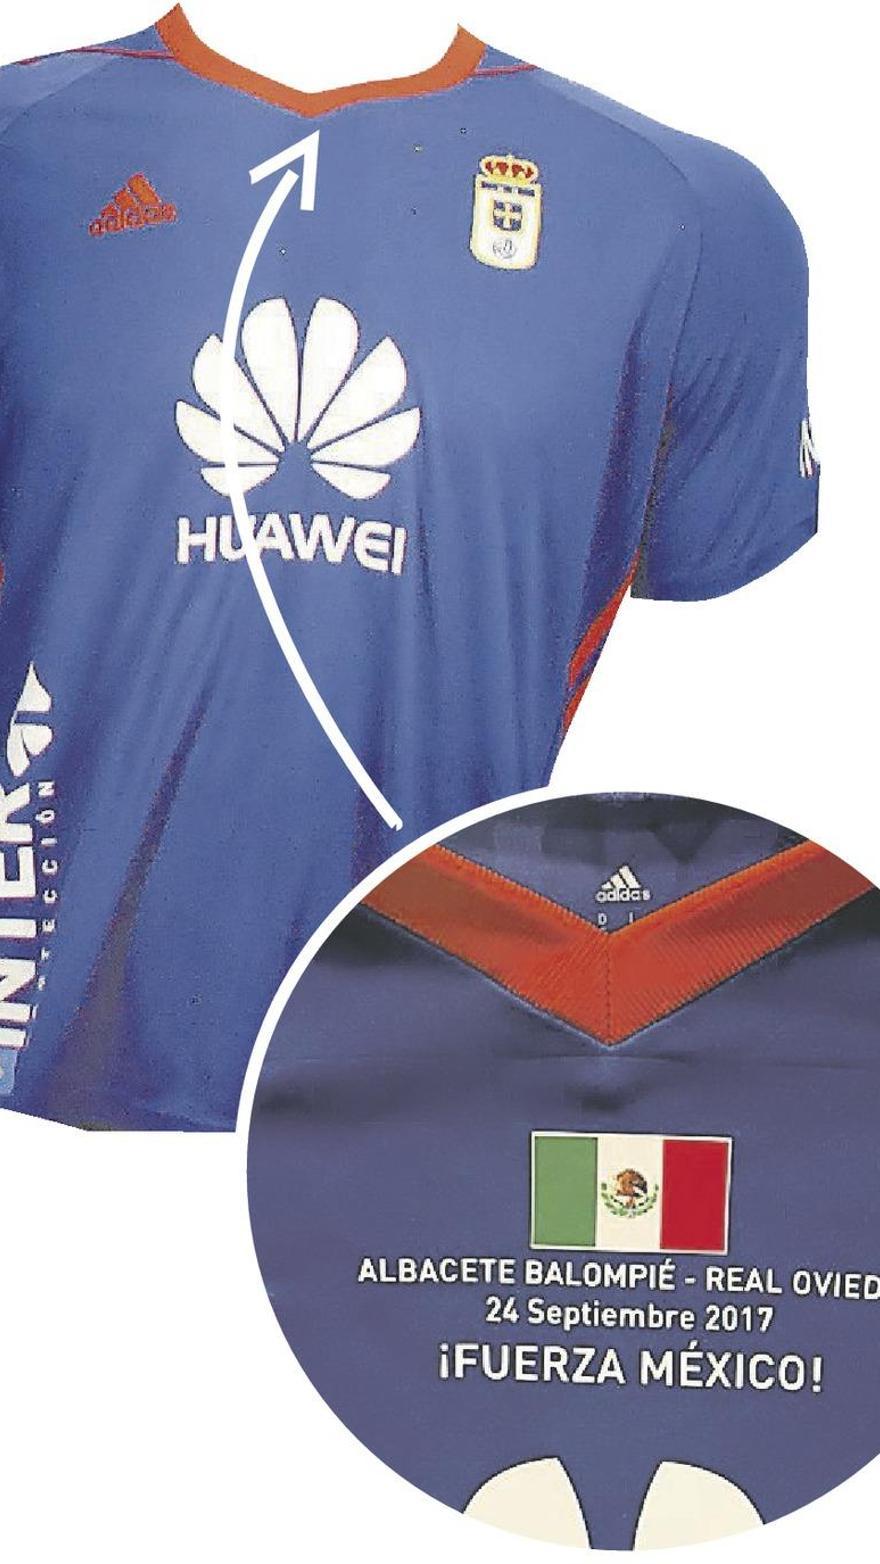 La camiseta de Toché se subasta a casi 400 euros - La Nueva España